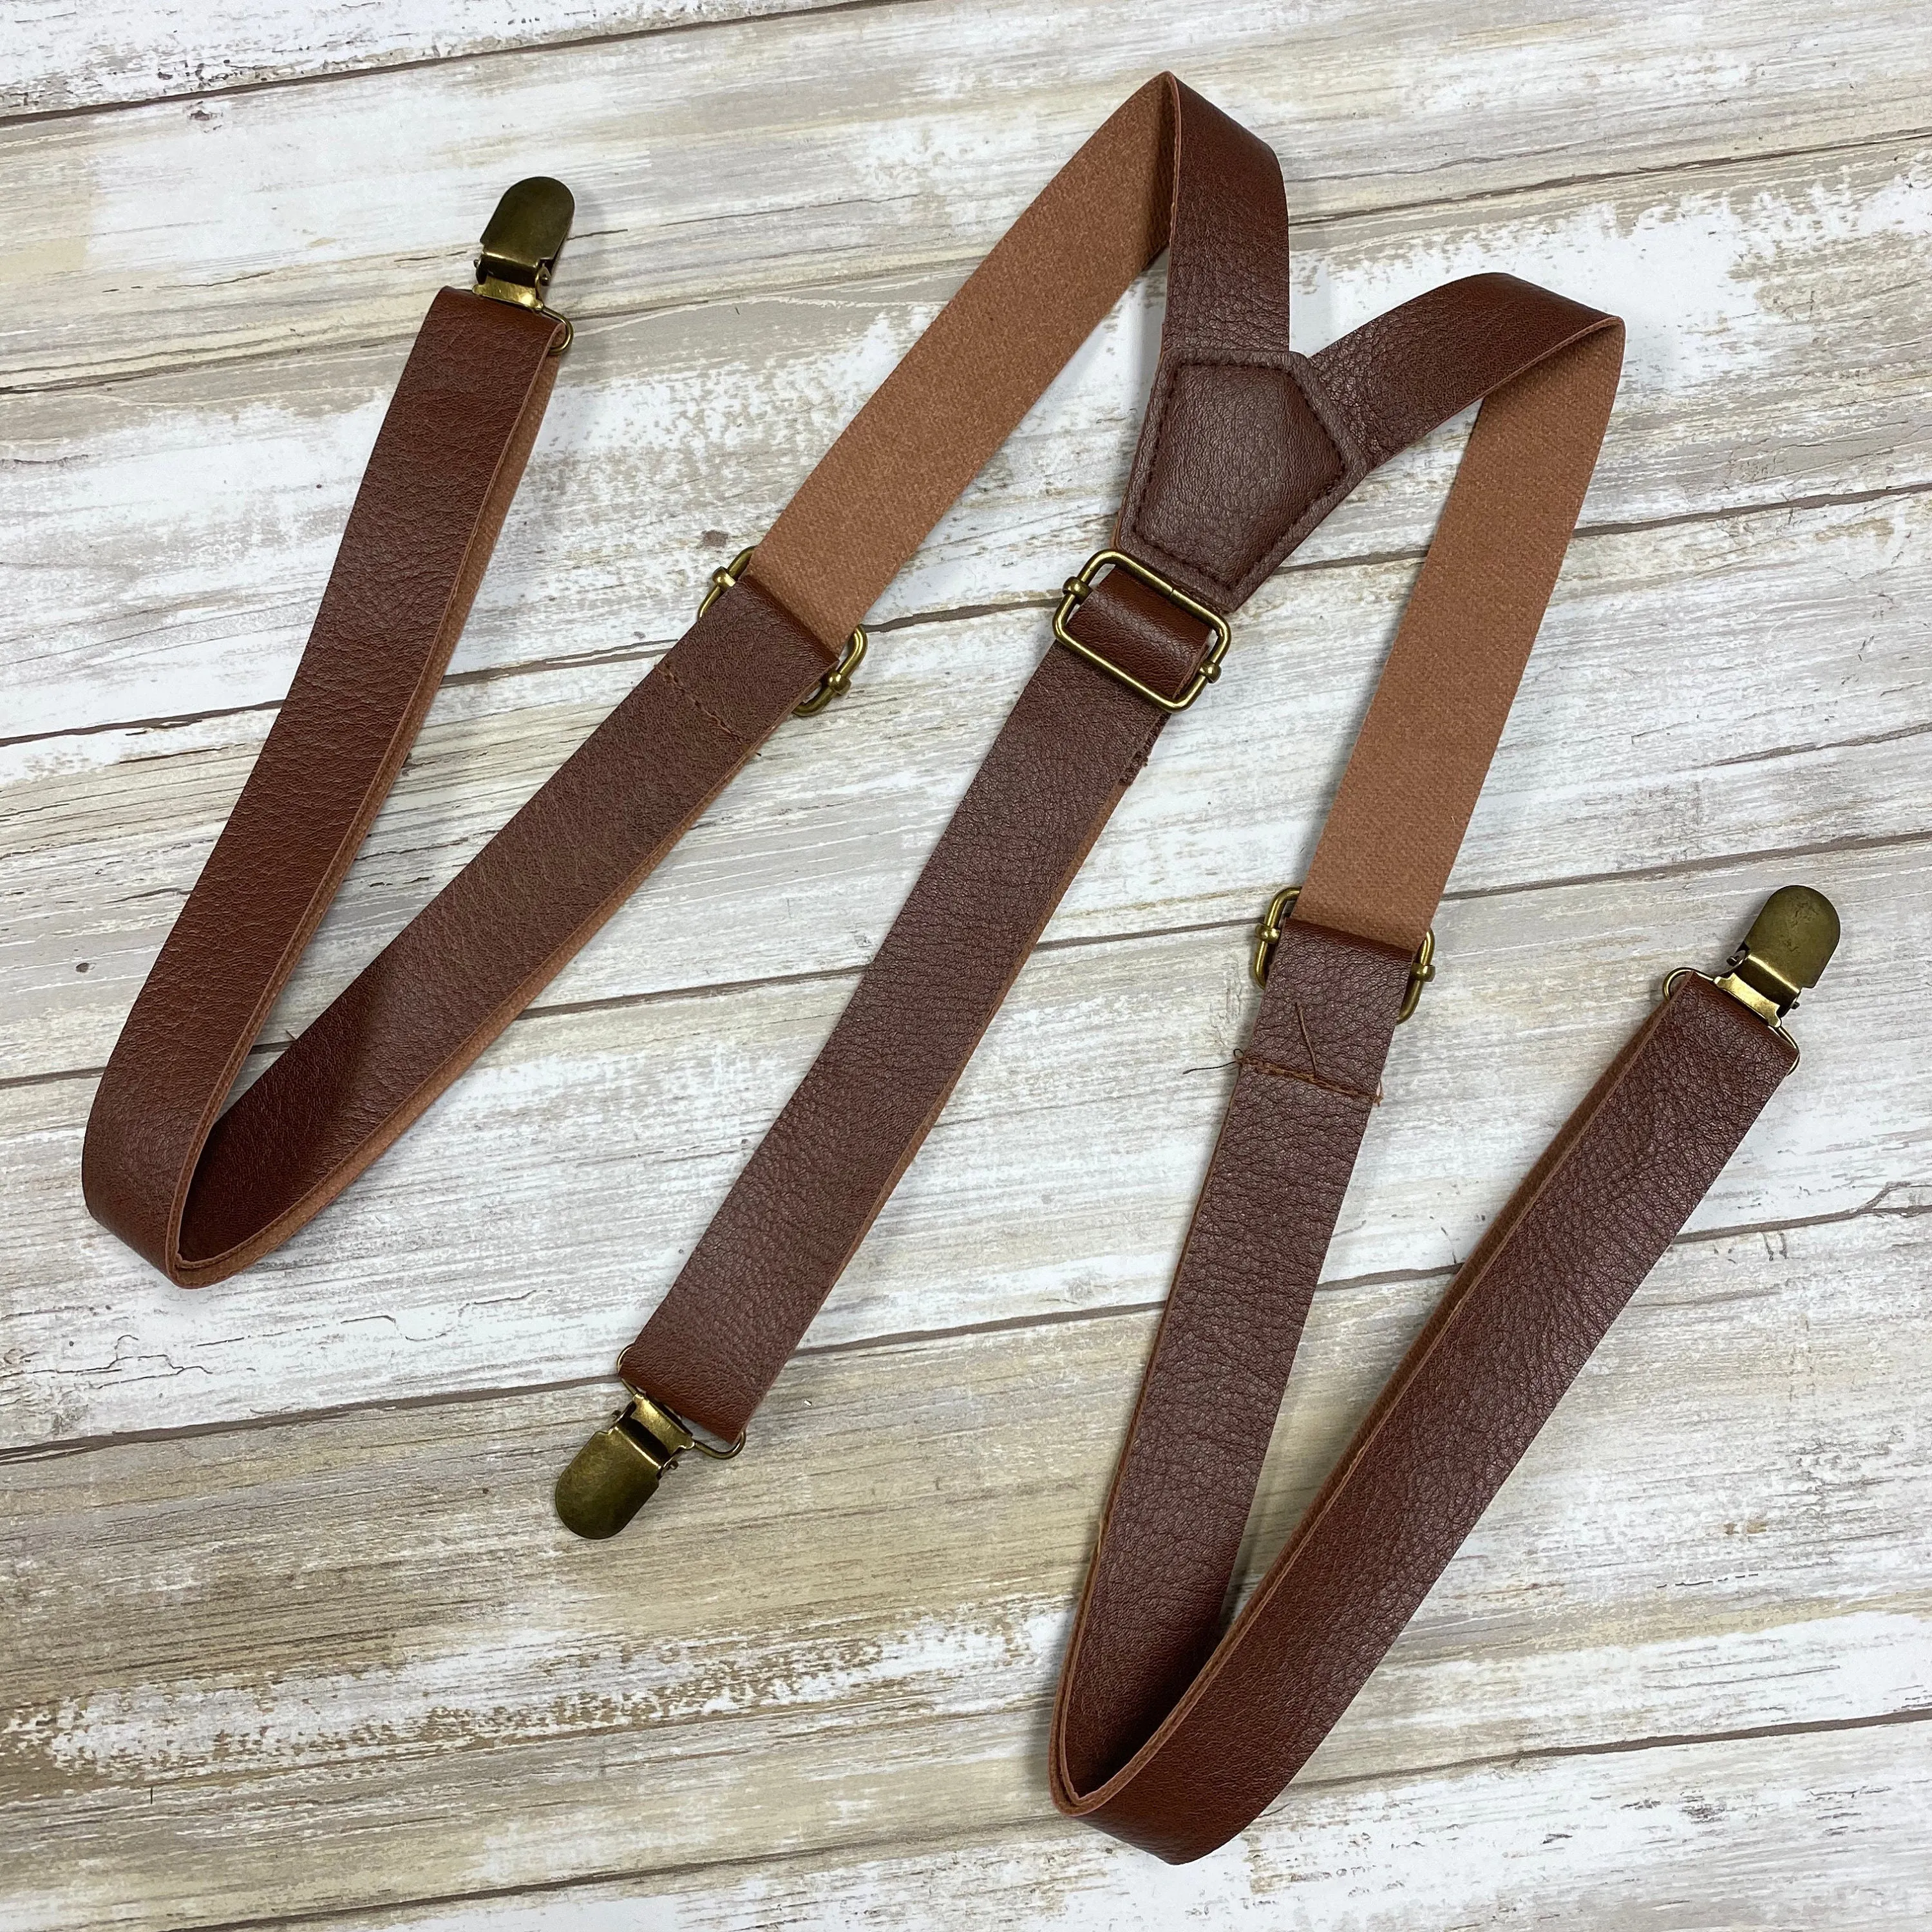 Vintage Style Wedding Suspenders Brown Leather Suspenders Braces Gift Suspenders For Husband Men Groomsmen Boys